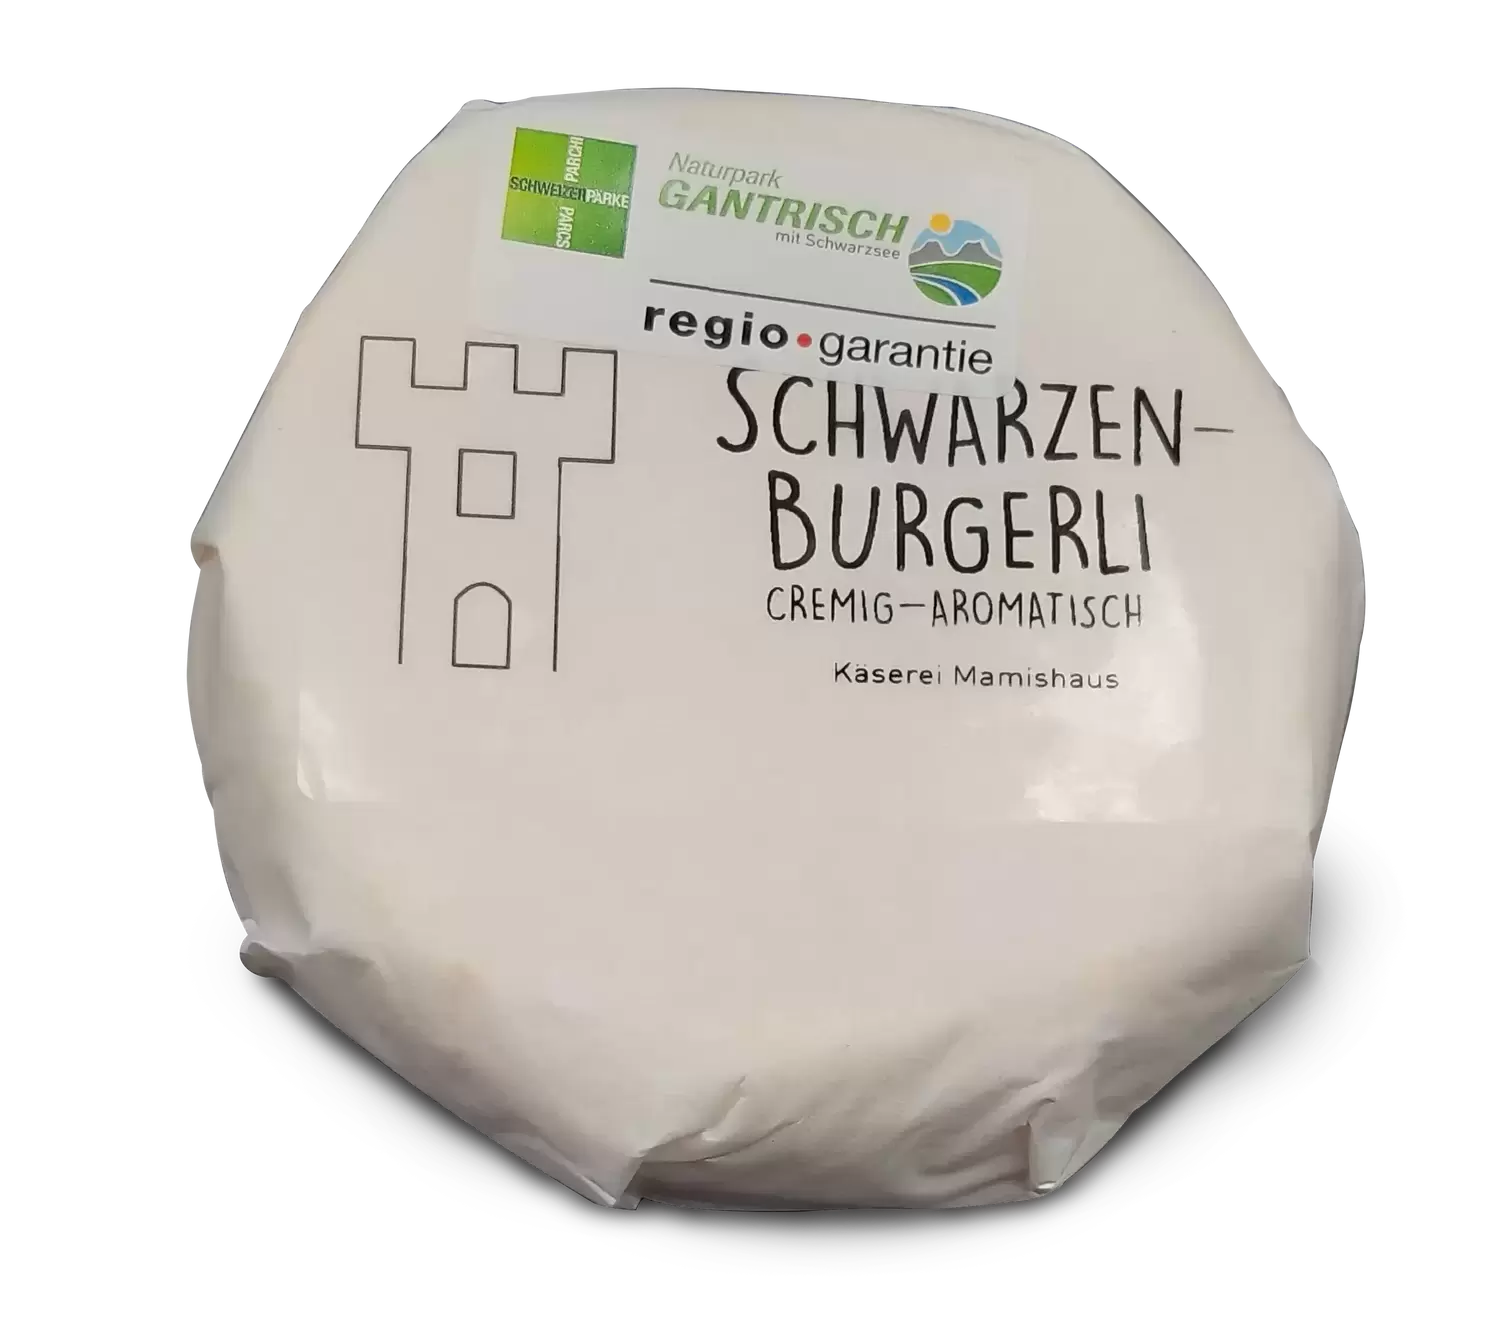 Schwarzenburgerli